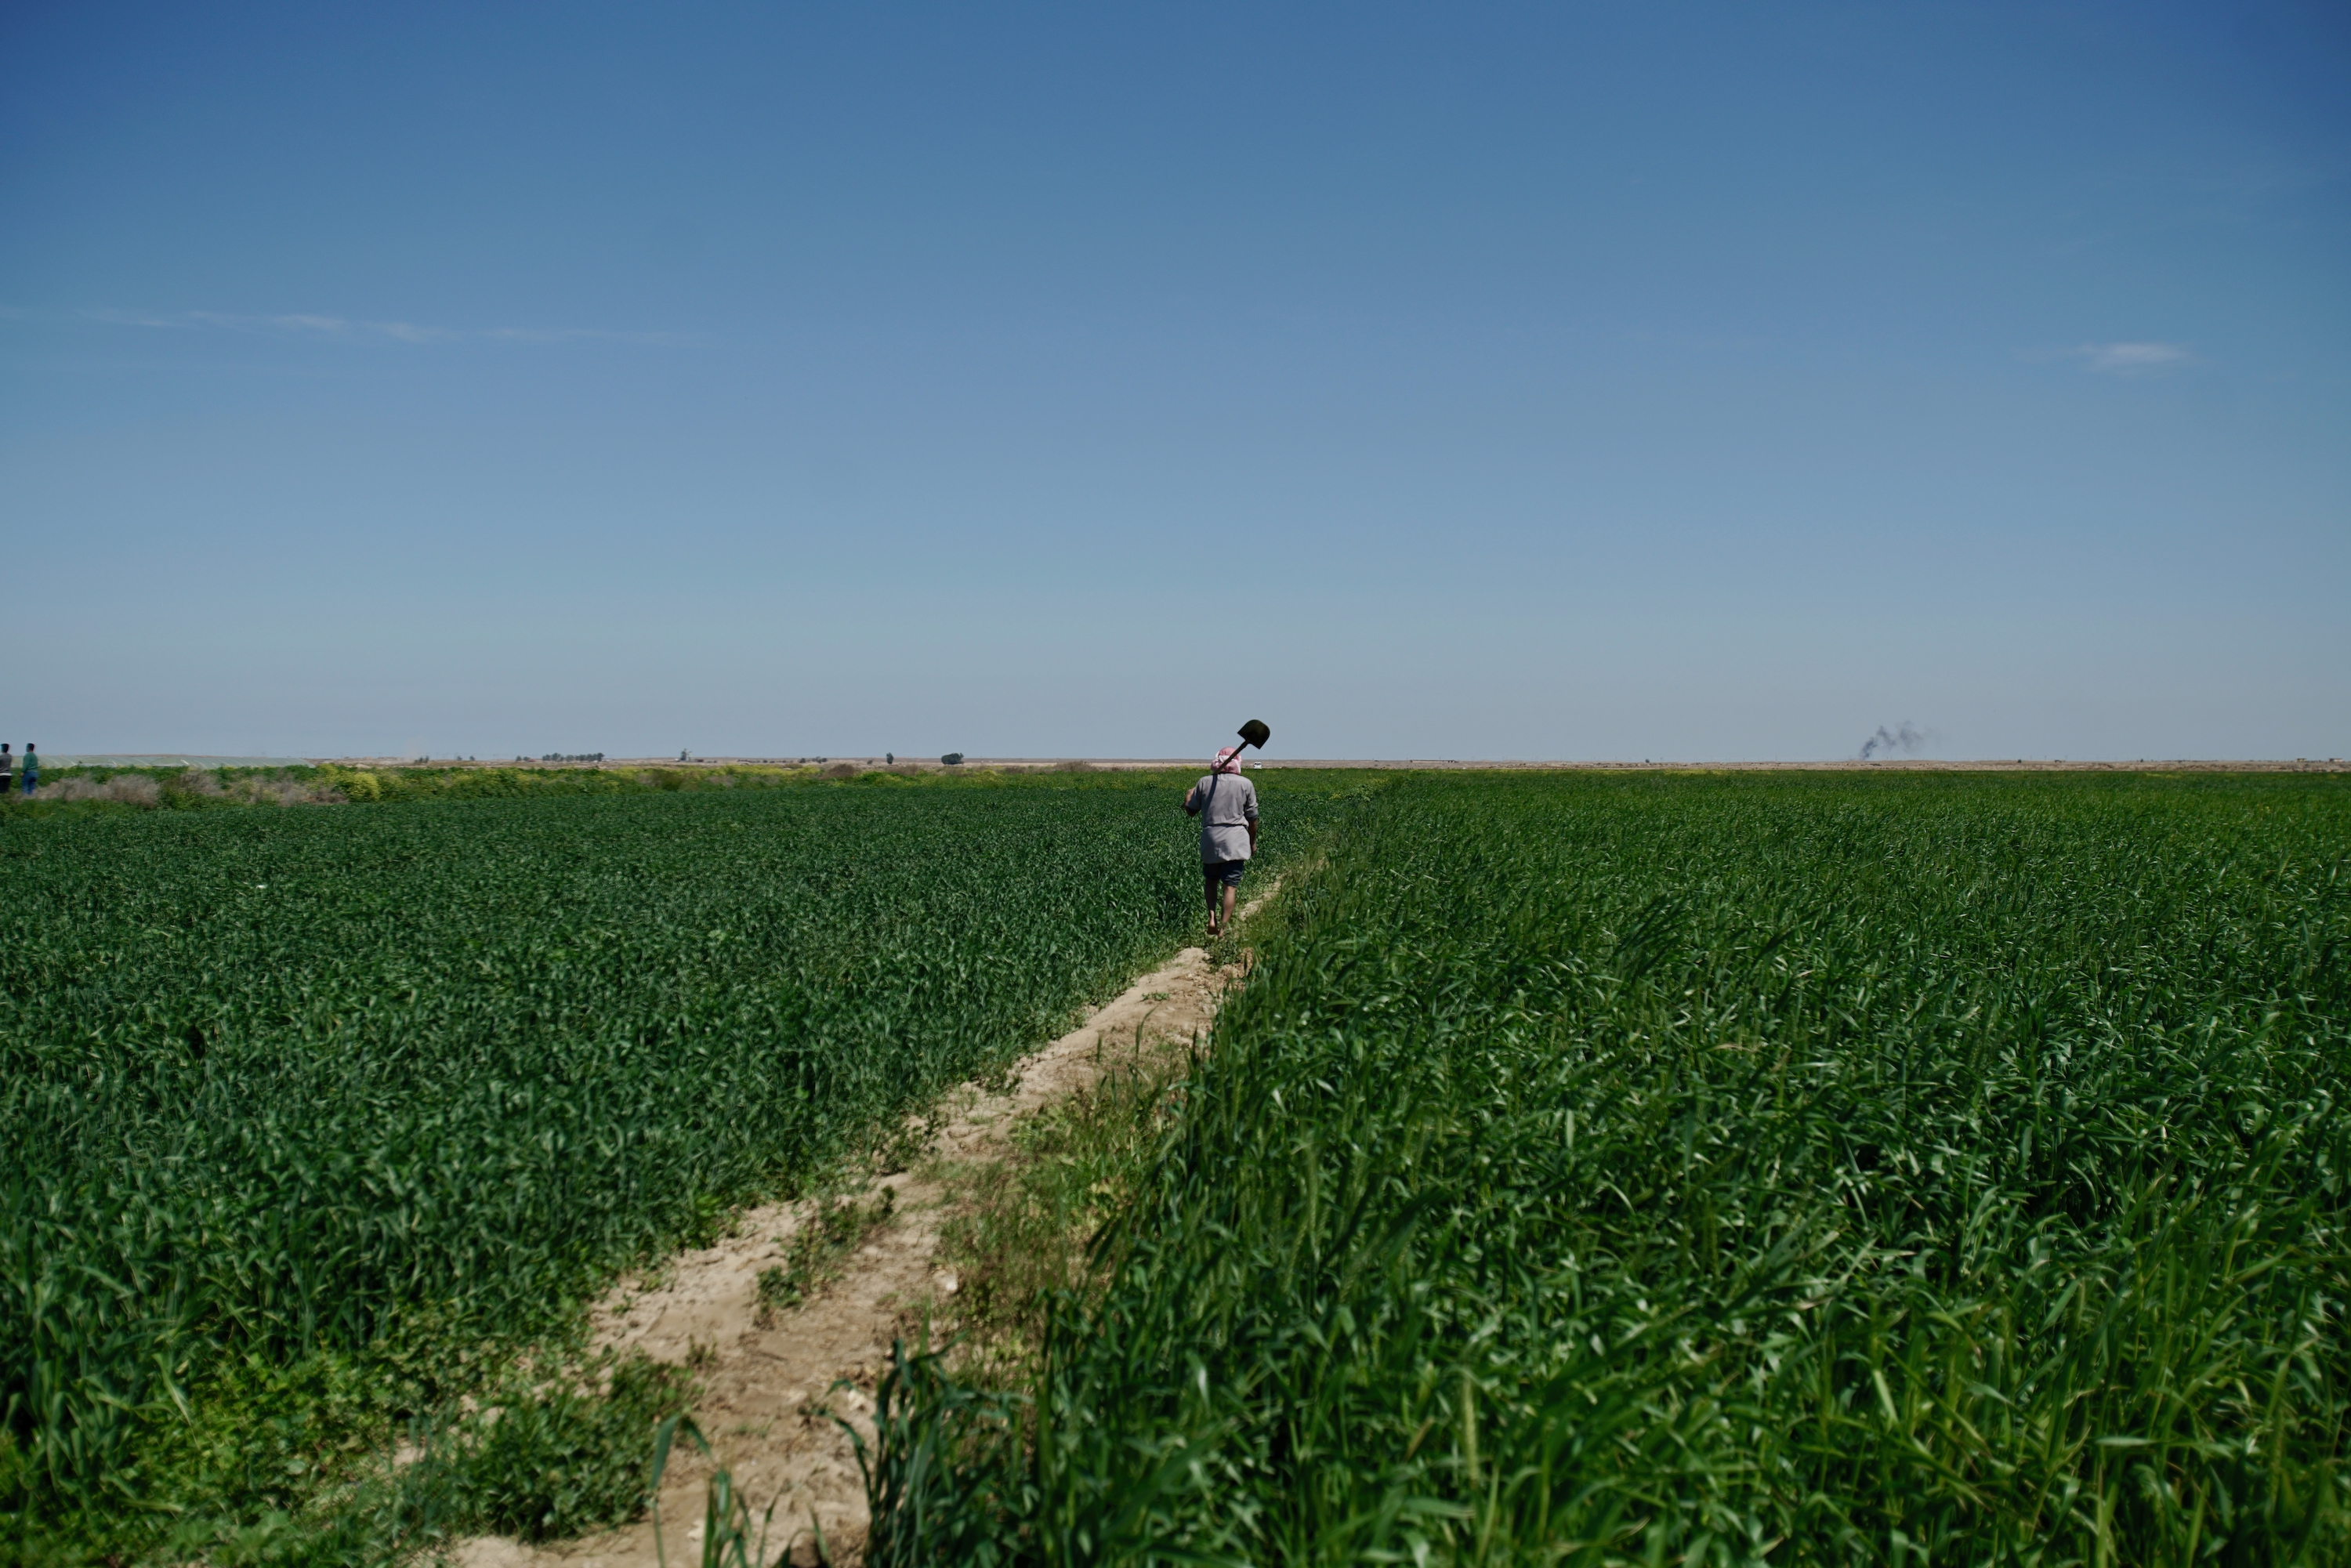 تساعد مشاريع برنامج الأغذية العالمي لبناء القدرة على الصمود في العراق على إعادة المياه إلى المجتمعات المحلية في مواجهة تغير المناخ. يستطيع المزارعون استئناف الزراعة وإطعام عائلاتهم وبيع الفائض. صورة: برنامج الأغذية العالمي/أسامة محمد وجيه